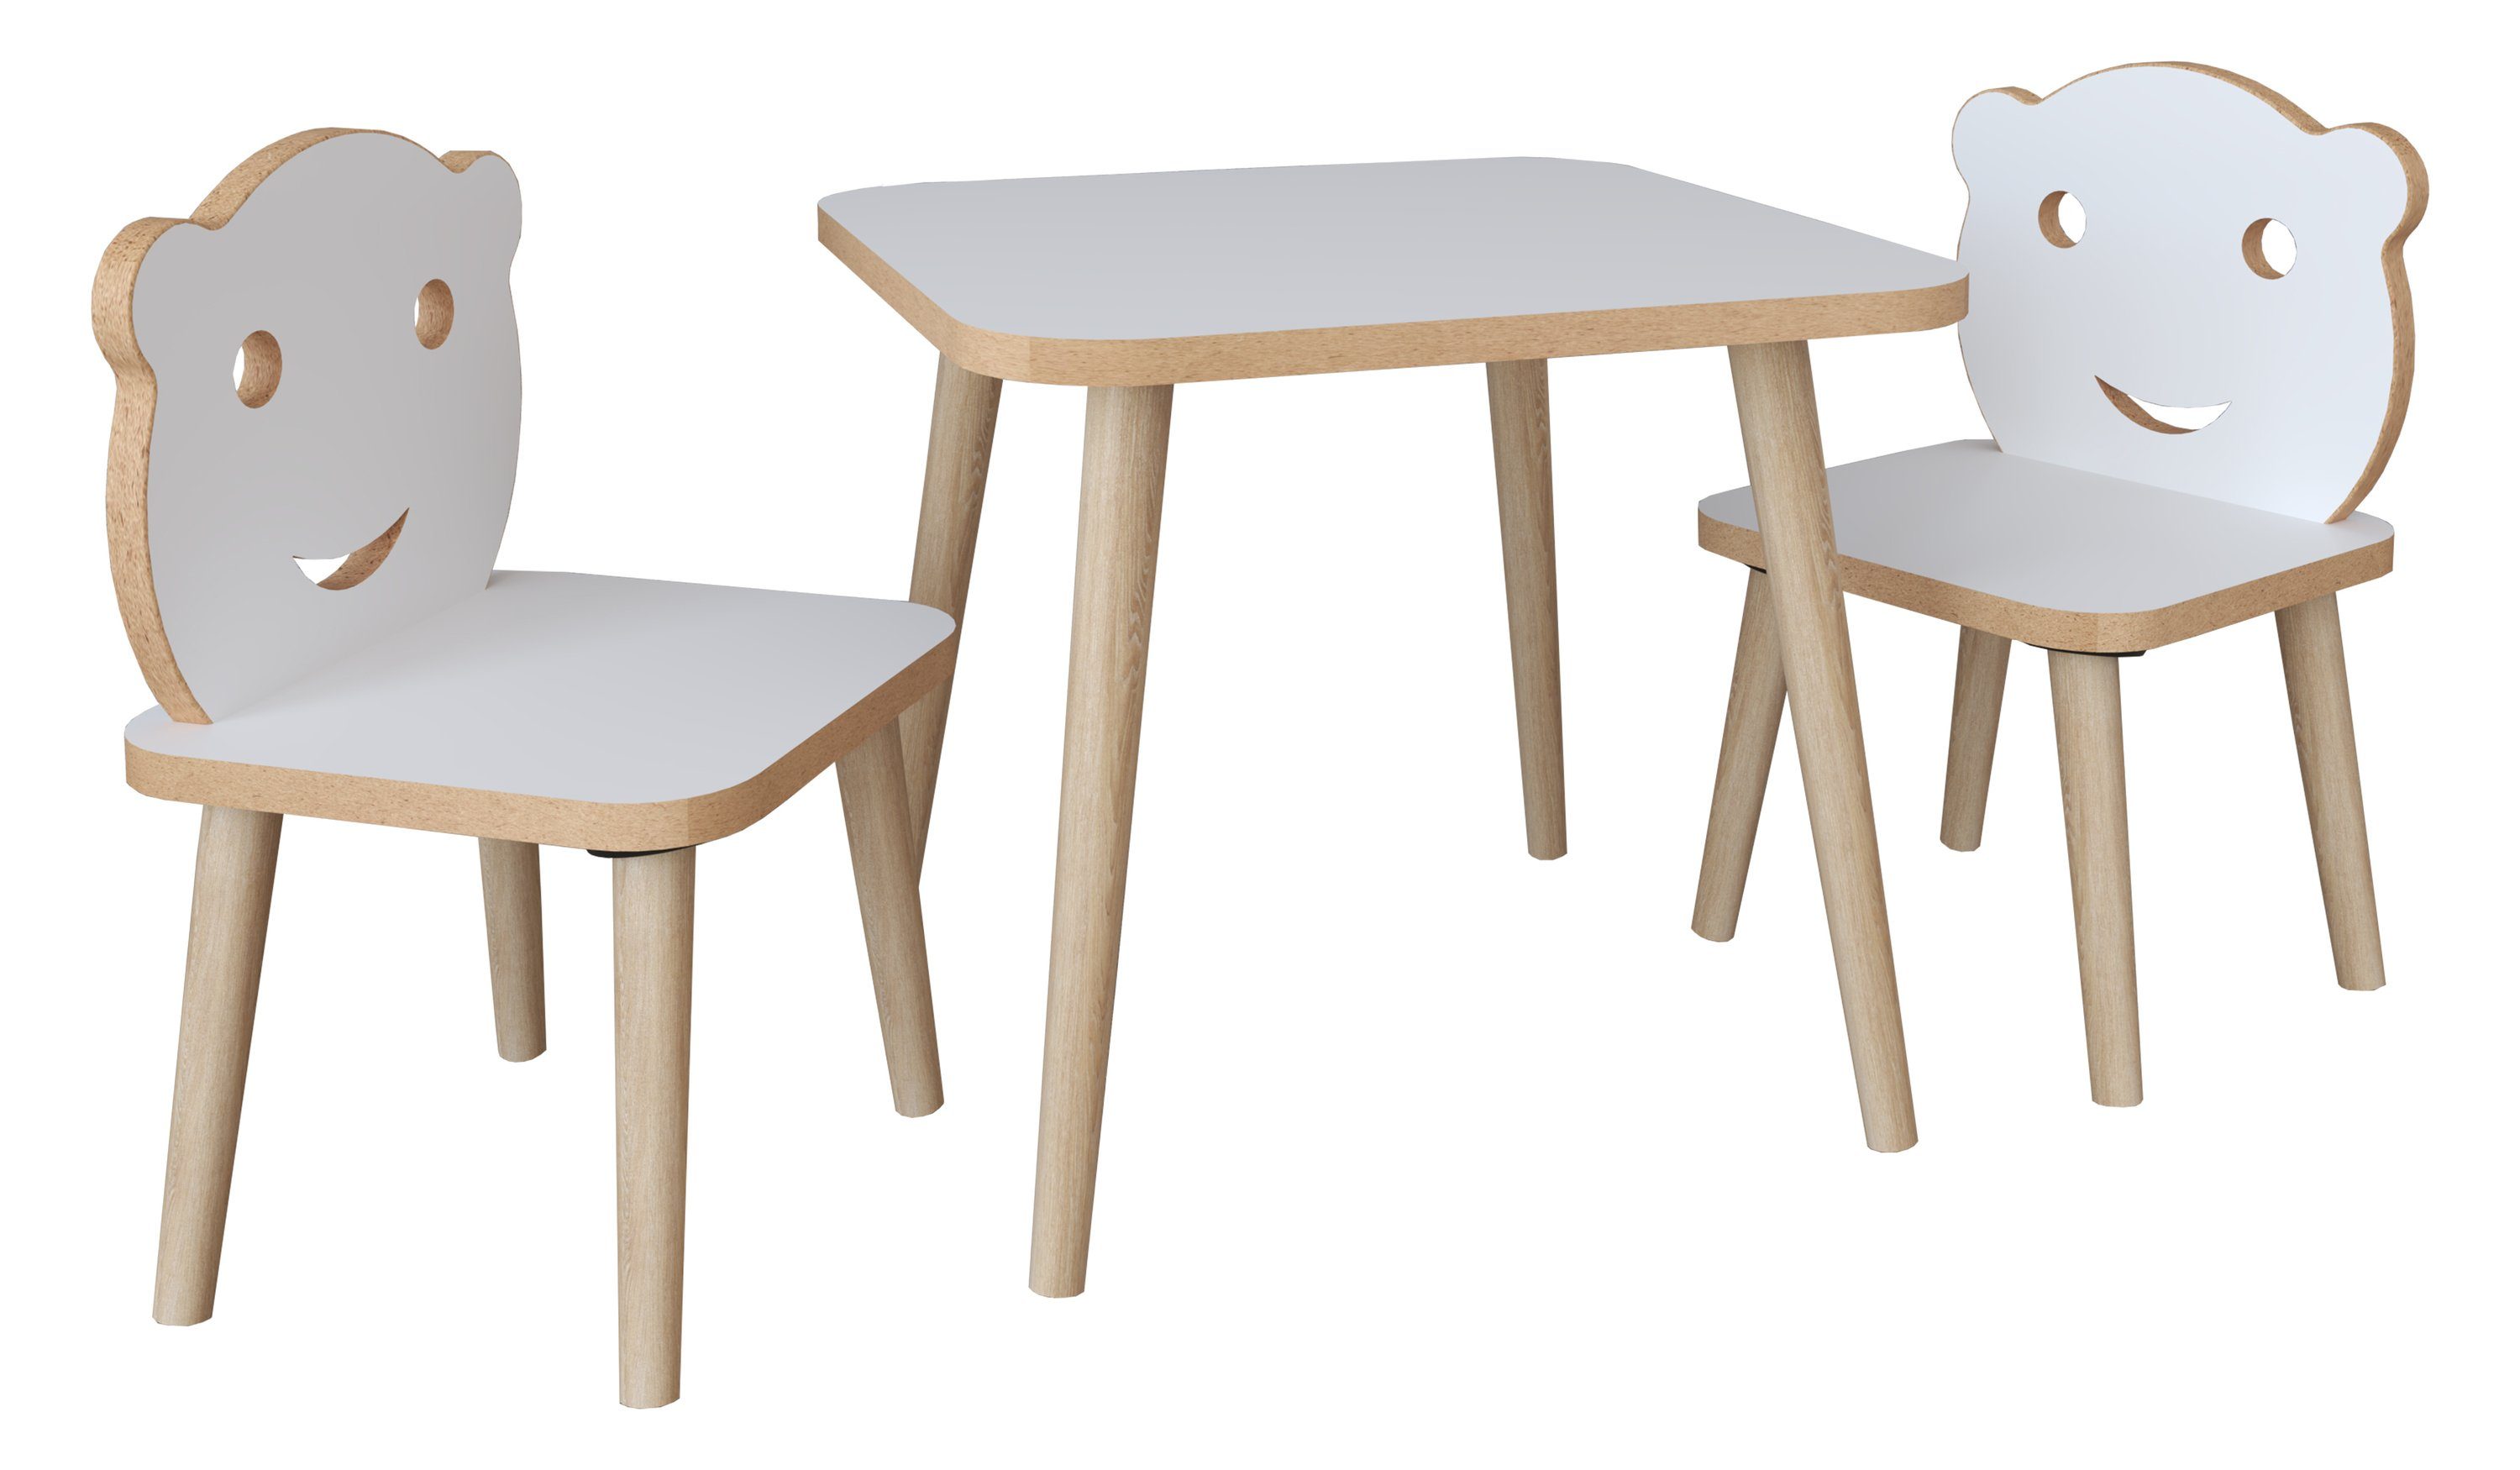 VCM Couchtisch 3tlg. Kinder Stuhl Kindermöbel Weiß Tisch Sitzgruppe